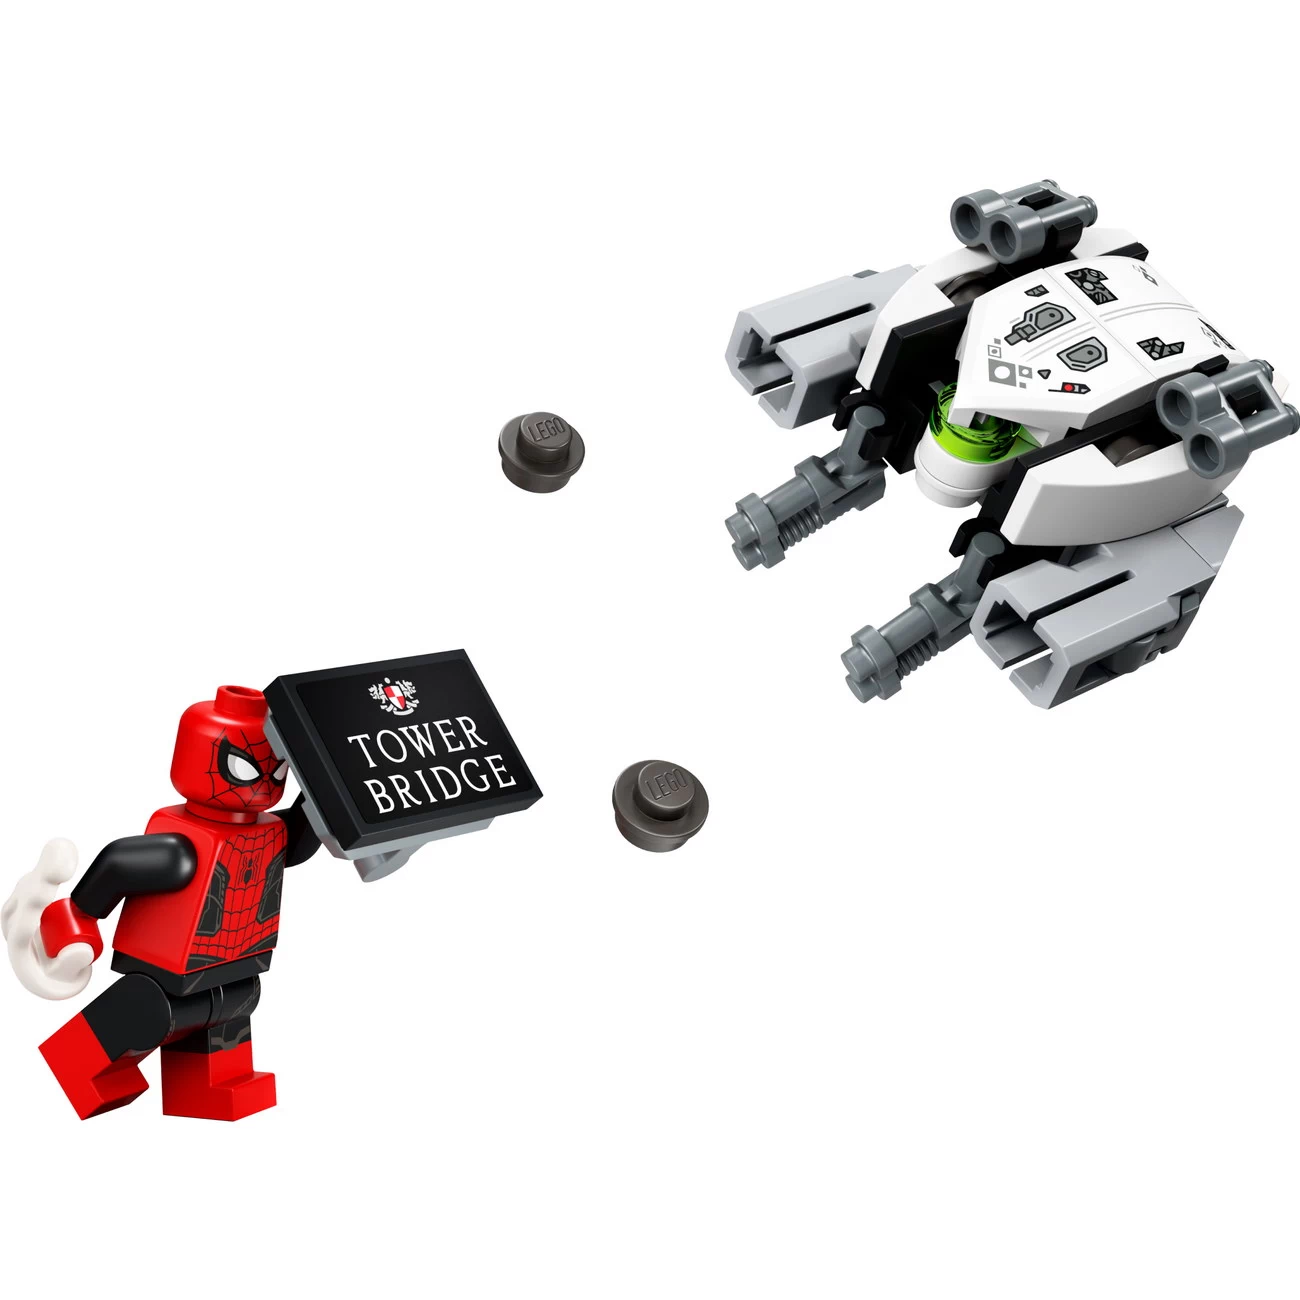 LEGO Avengers 30443 - Spider-Mans Brückenduell - Polybag